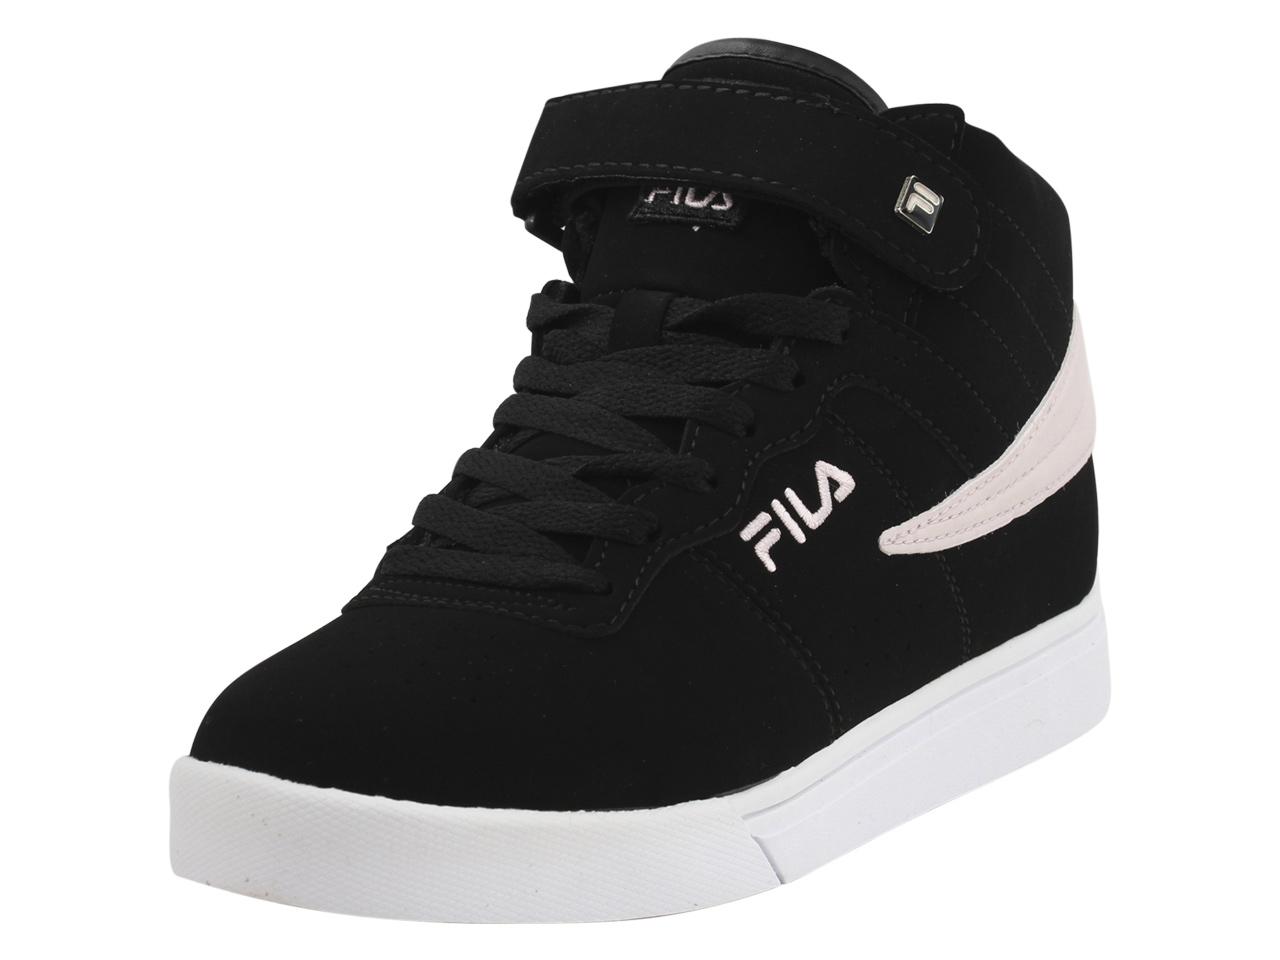 Fila Women's Vulc 13 MP Sneakers Shoes - Black/Chalk Pink/White - 6 B(M) US